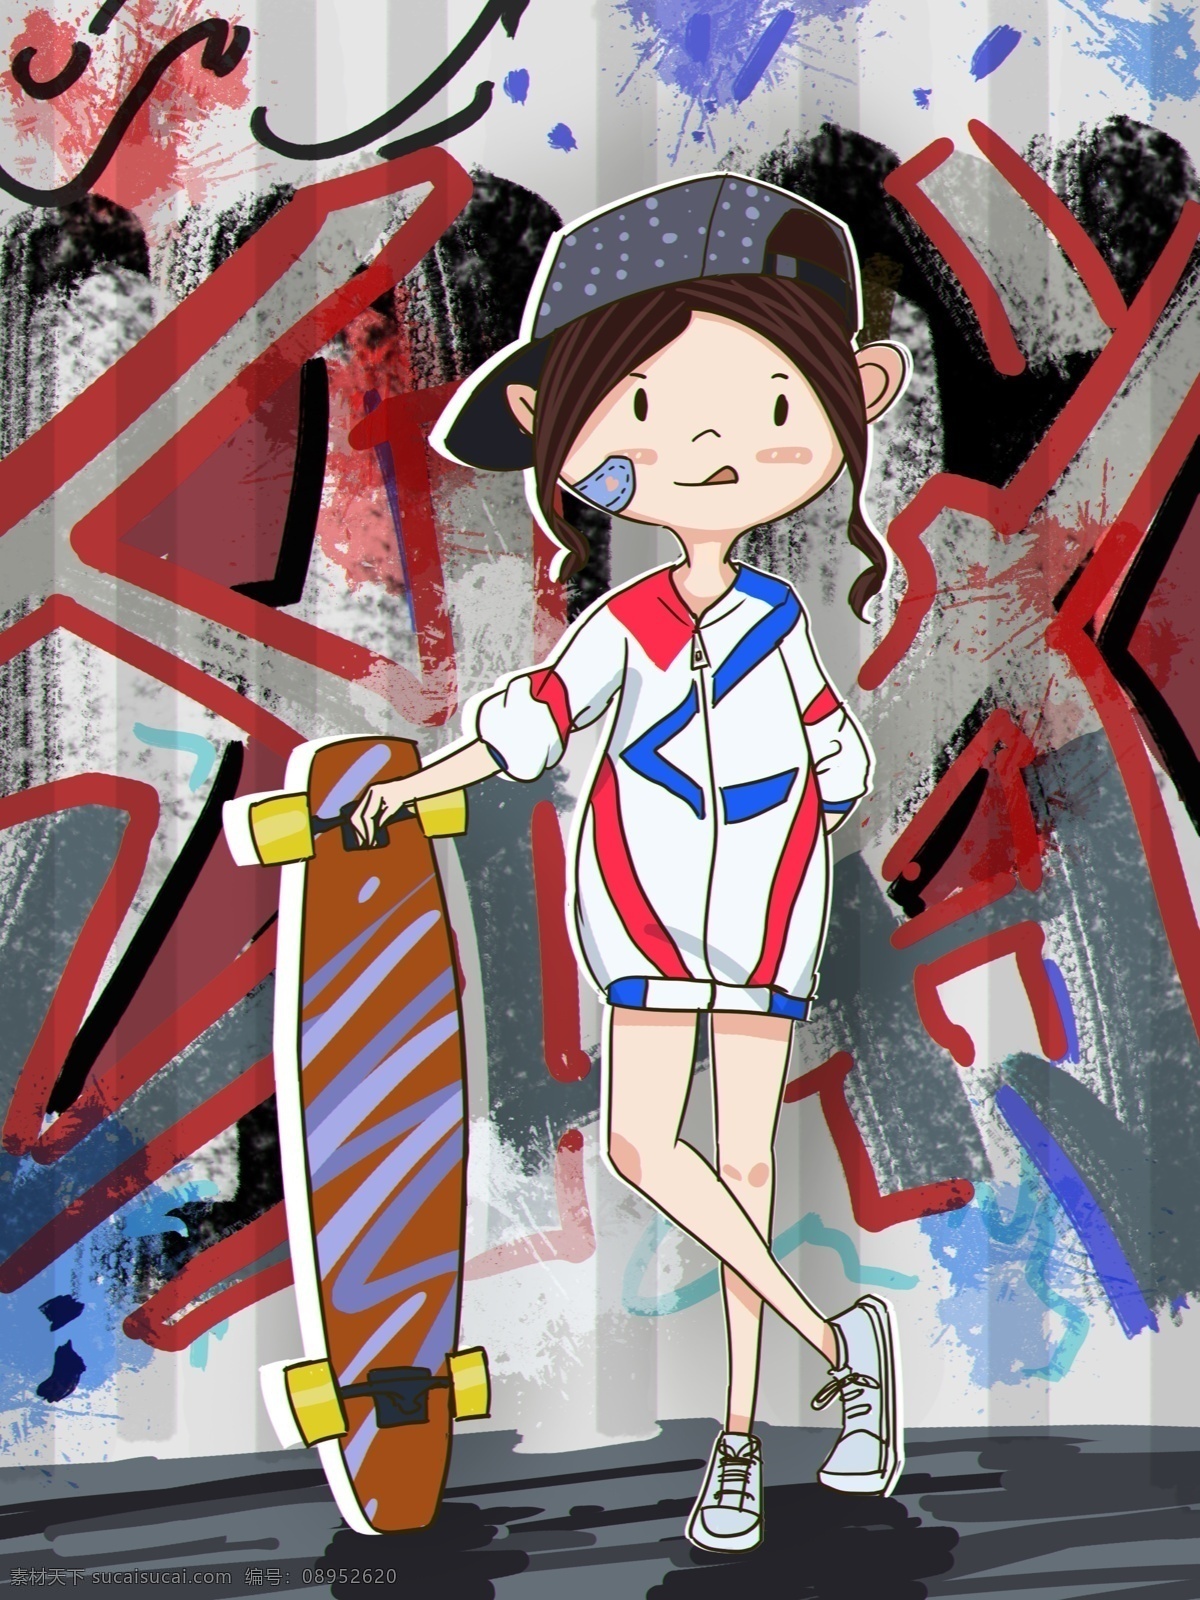 世界 滑板 日 女孩 世界滑板日 滑板日 滑板女孩 滑板男孩 涂鸦 街头 街头滑板